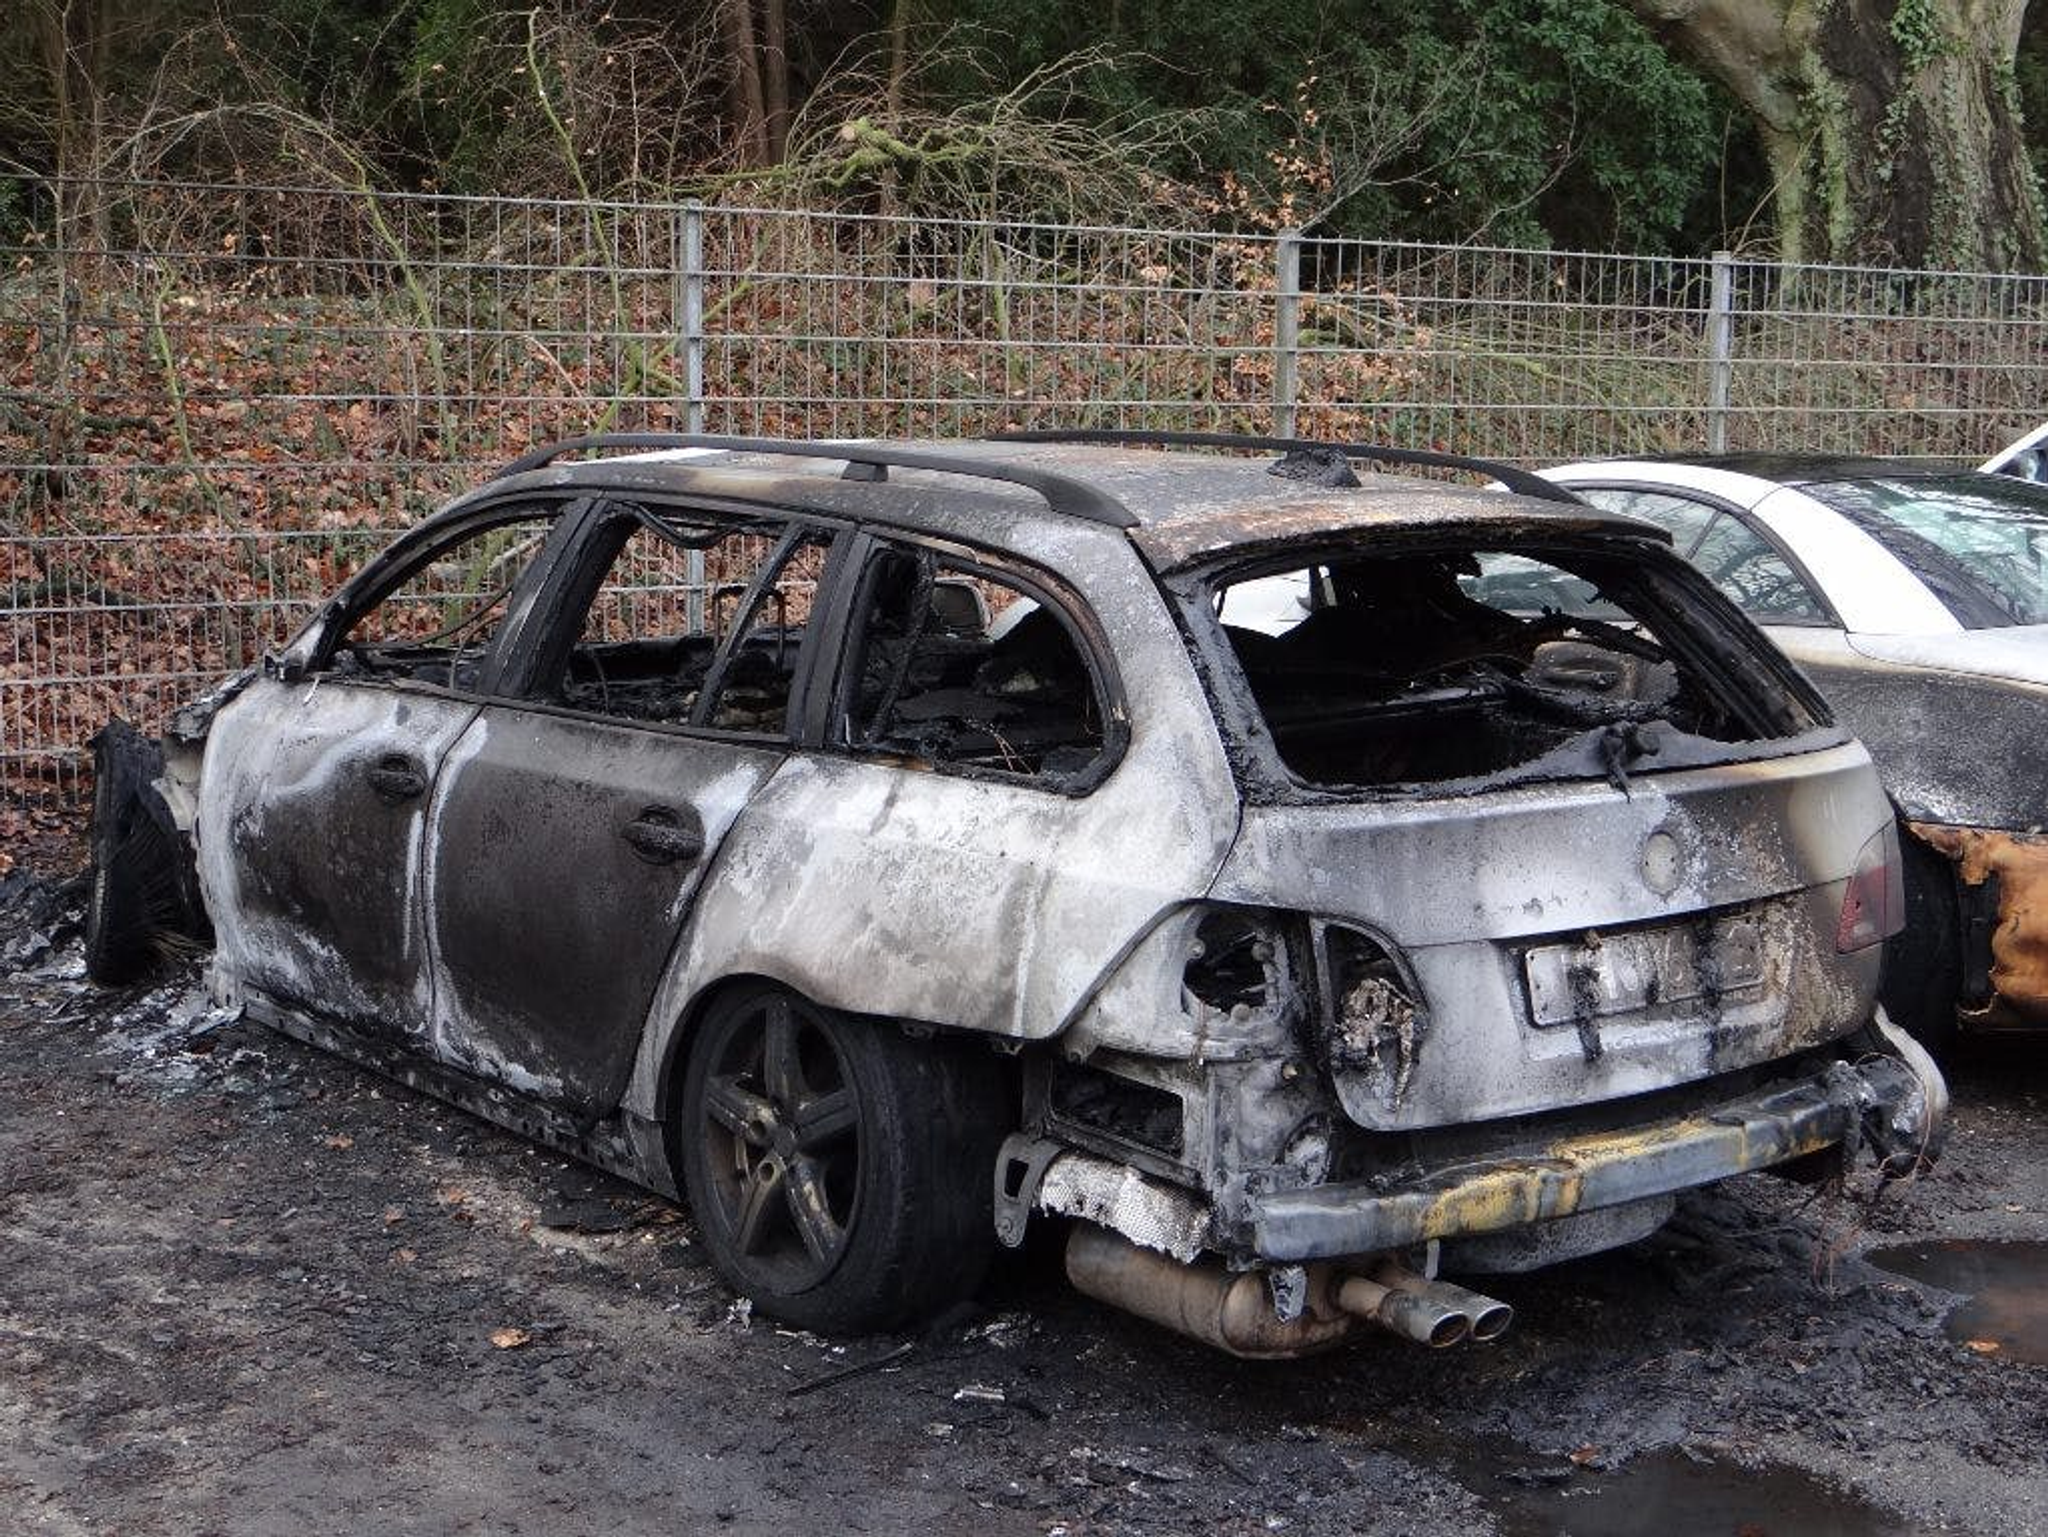 mașină arsă, mașină avariată, vehicul după incendiu, mașină incendiată